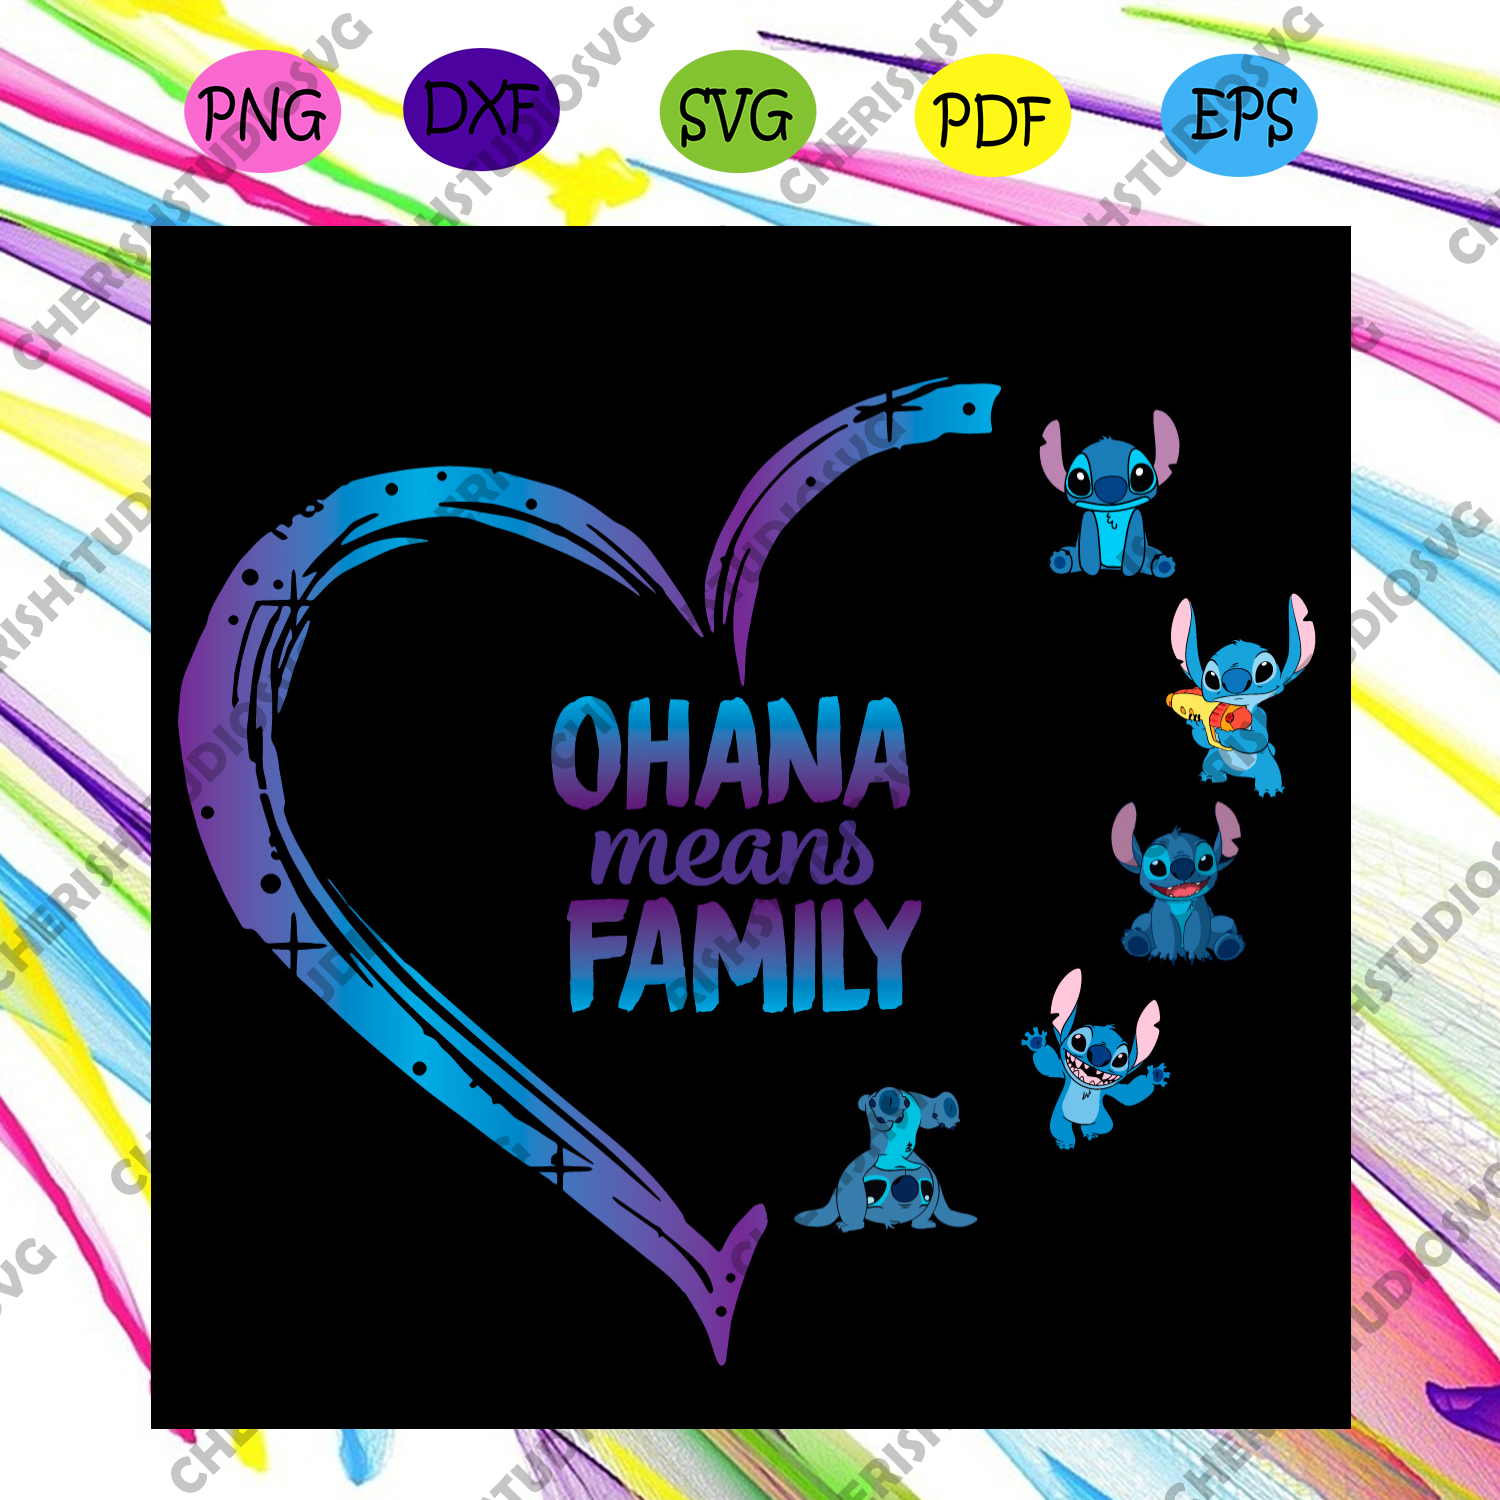 Stitch Ohana Means Family Svg Family Svg Stitch Svg Heart Svg Cute Cherishsvgstudio